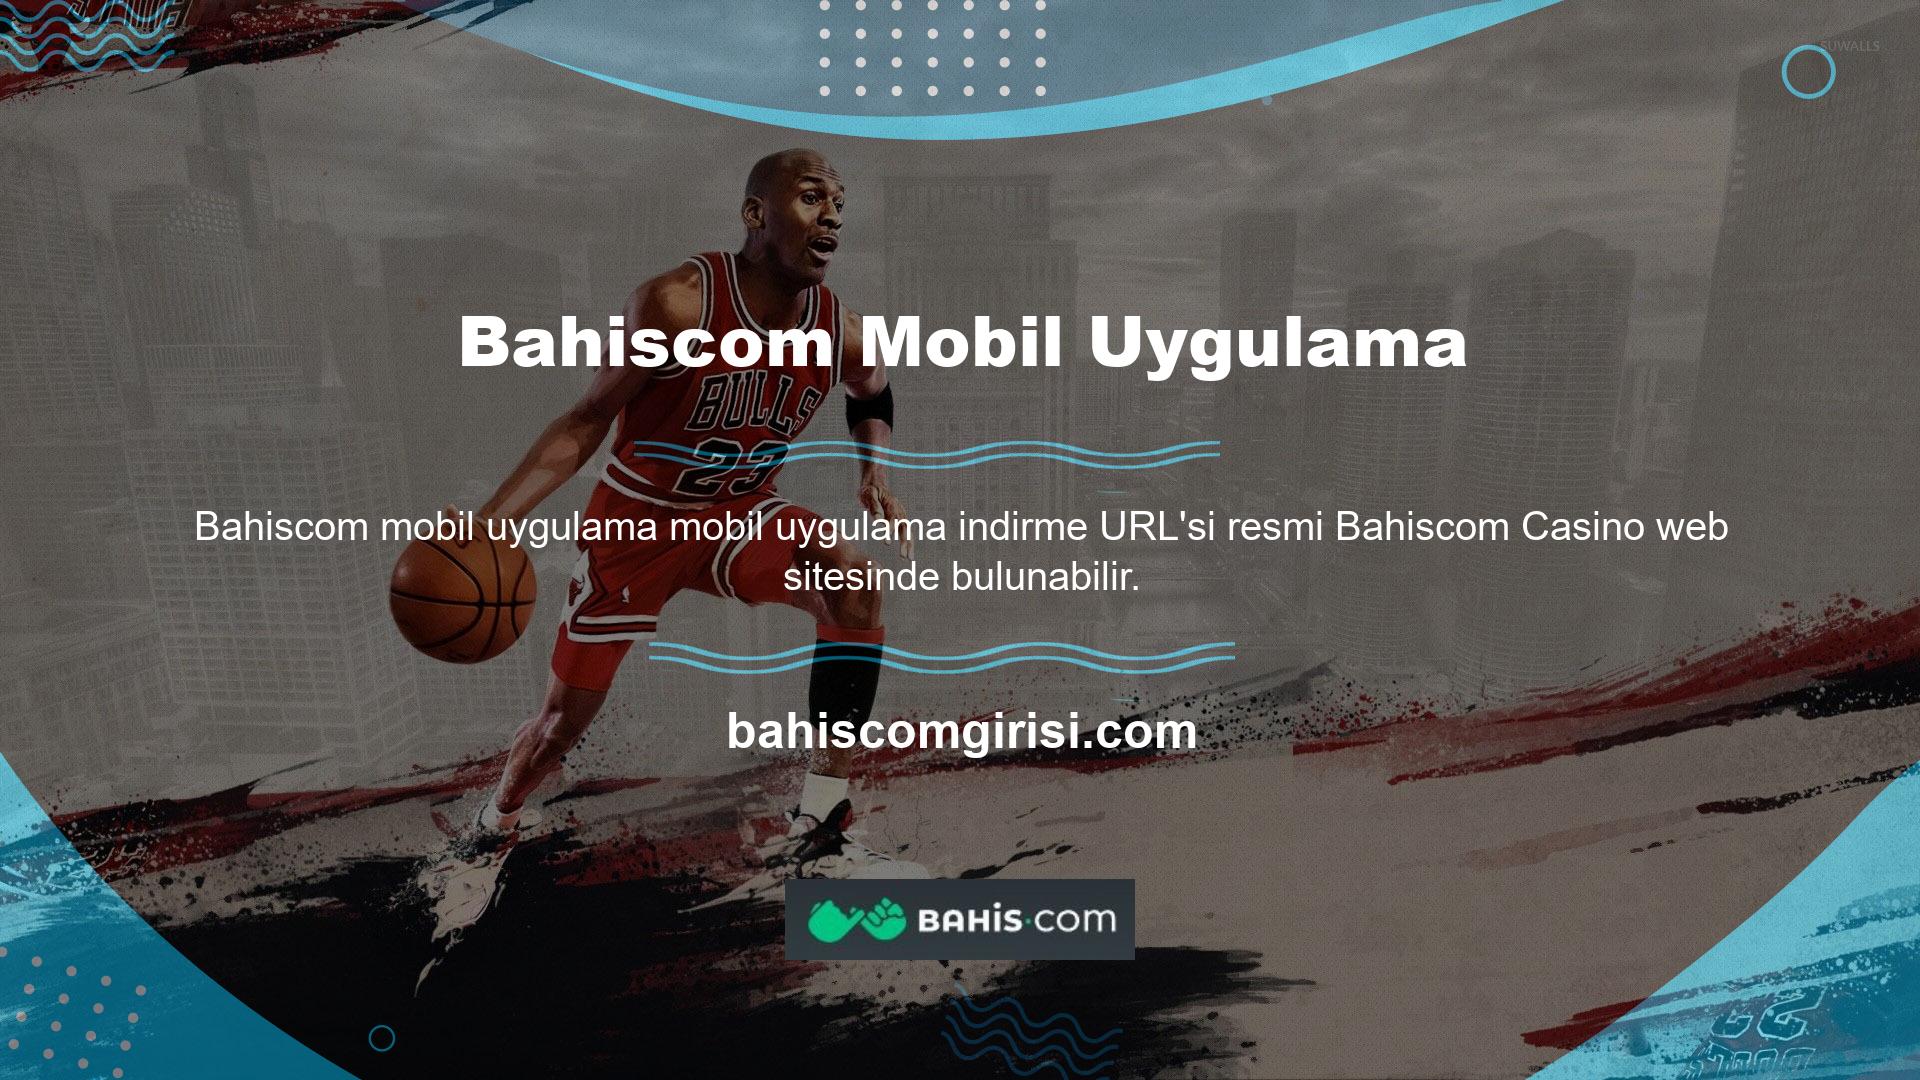 Android ve iOS cihazlar için indirilebilir mobil uygulamalar sunan Bahiscom web sitesi, siteyi tüm gençlik ortamlarına ulaştırmak için geliştirilmektedir